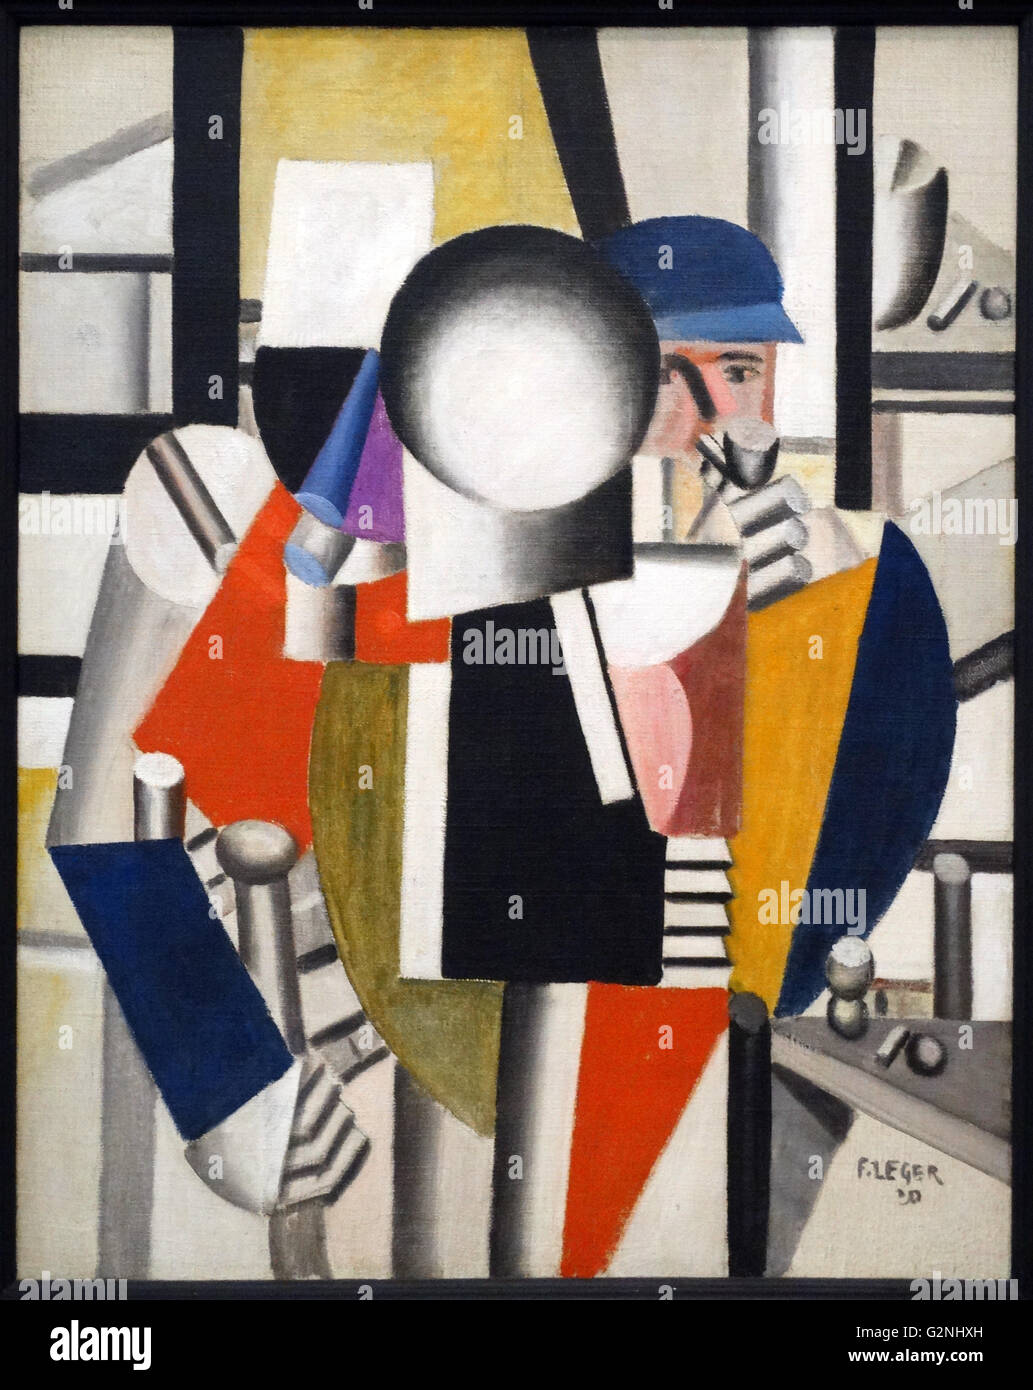 Les trois camarades (huile sur toile) par Fernand LEGER, un peintre, sculpteur et cinéaste. Dans ses premières années, il a créé une forme personnelle du cubisme qu'il a modifié progressivement dans un style populiste, plus figuratives. Banque D'Images